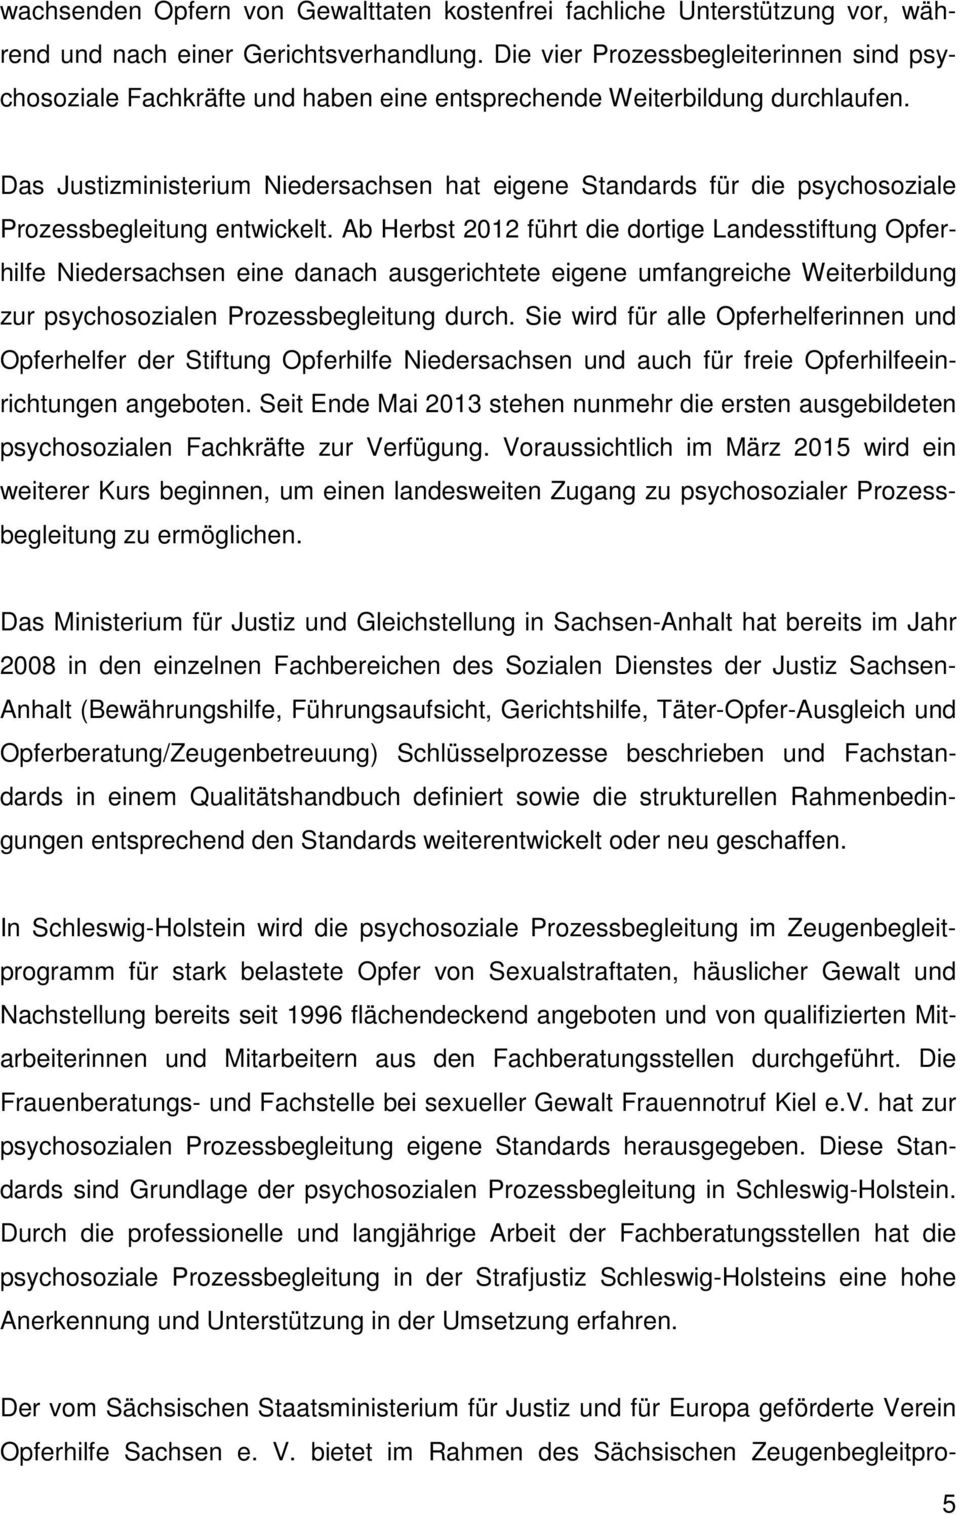 Das Justizministerium Niedersachsen hat eigene Standards für die psychosoziale Prozessbegleitung entwickelt.